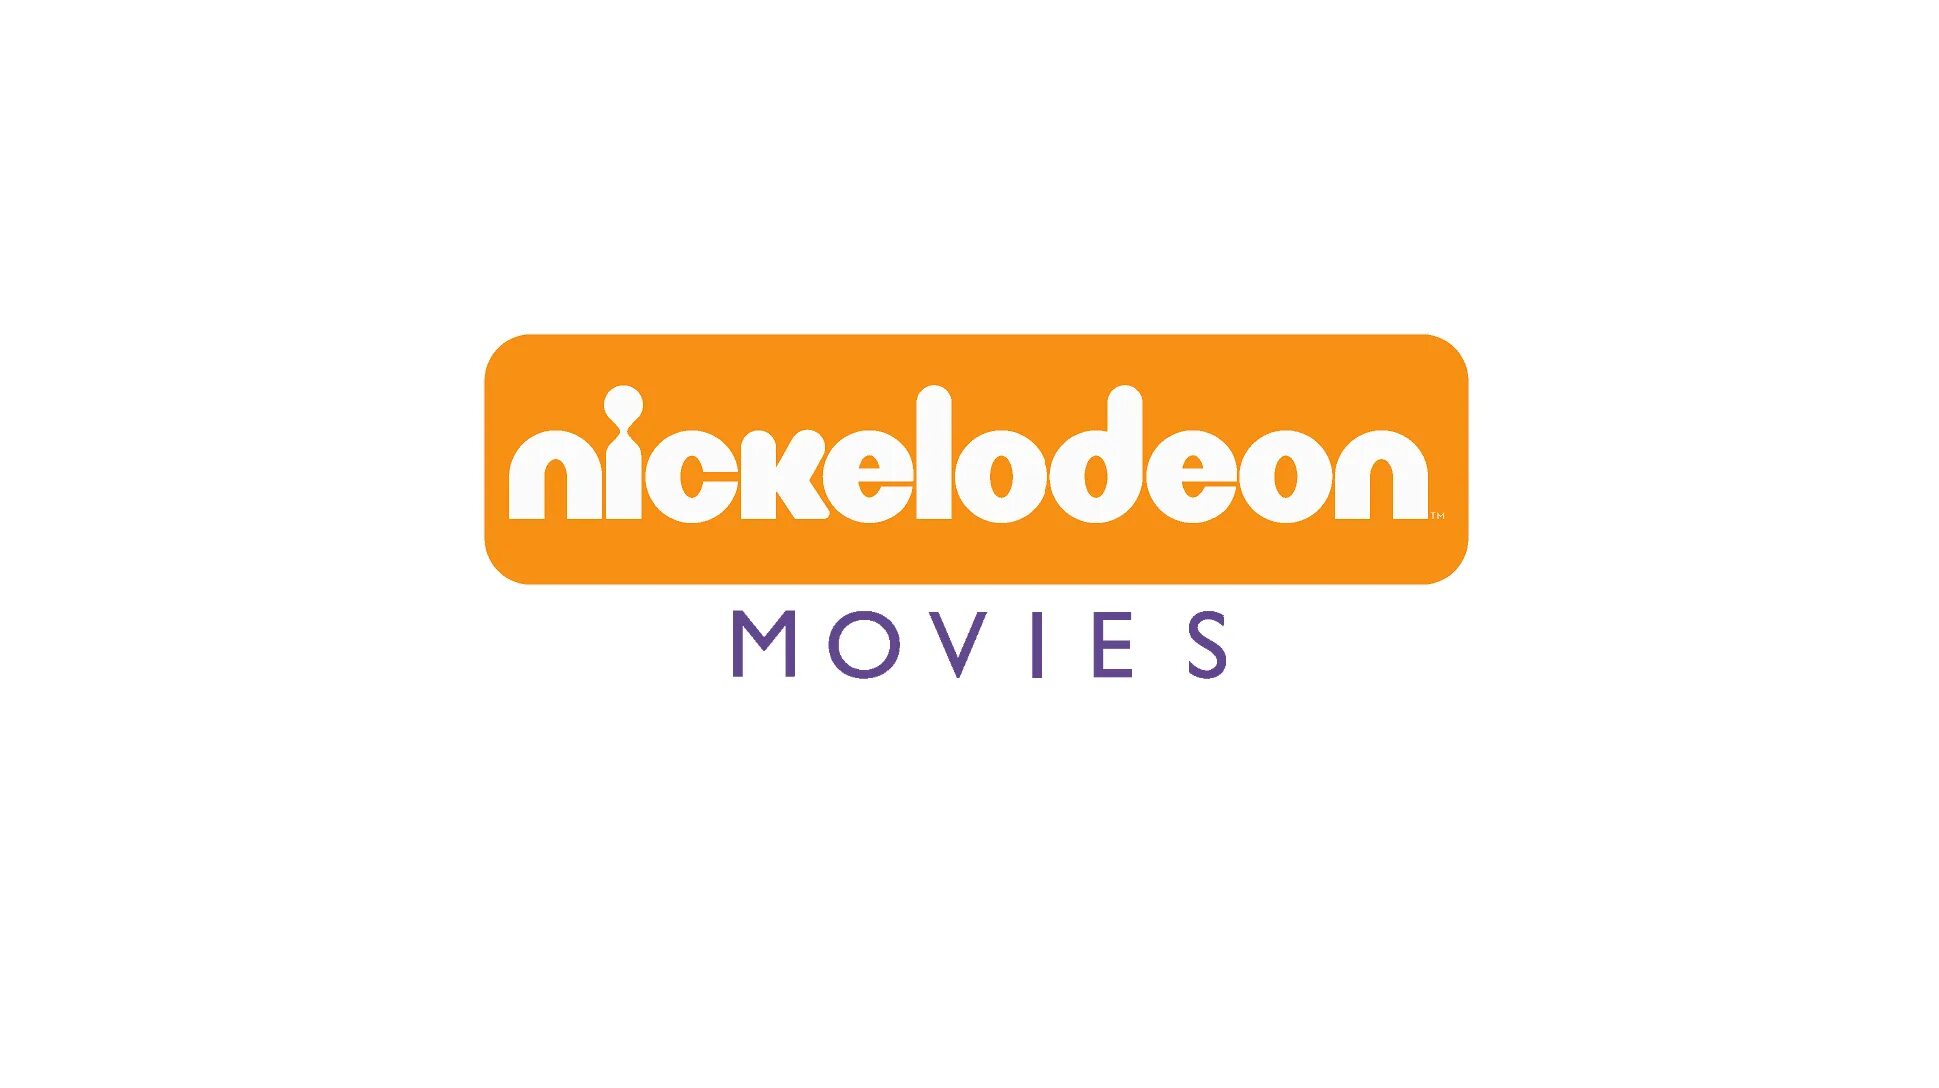 Nickelodeon animation studio. Nickelodeon. Nickelodeon movies. Никелодеон анимейшен студио. Студия Nickelodeon movies.